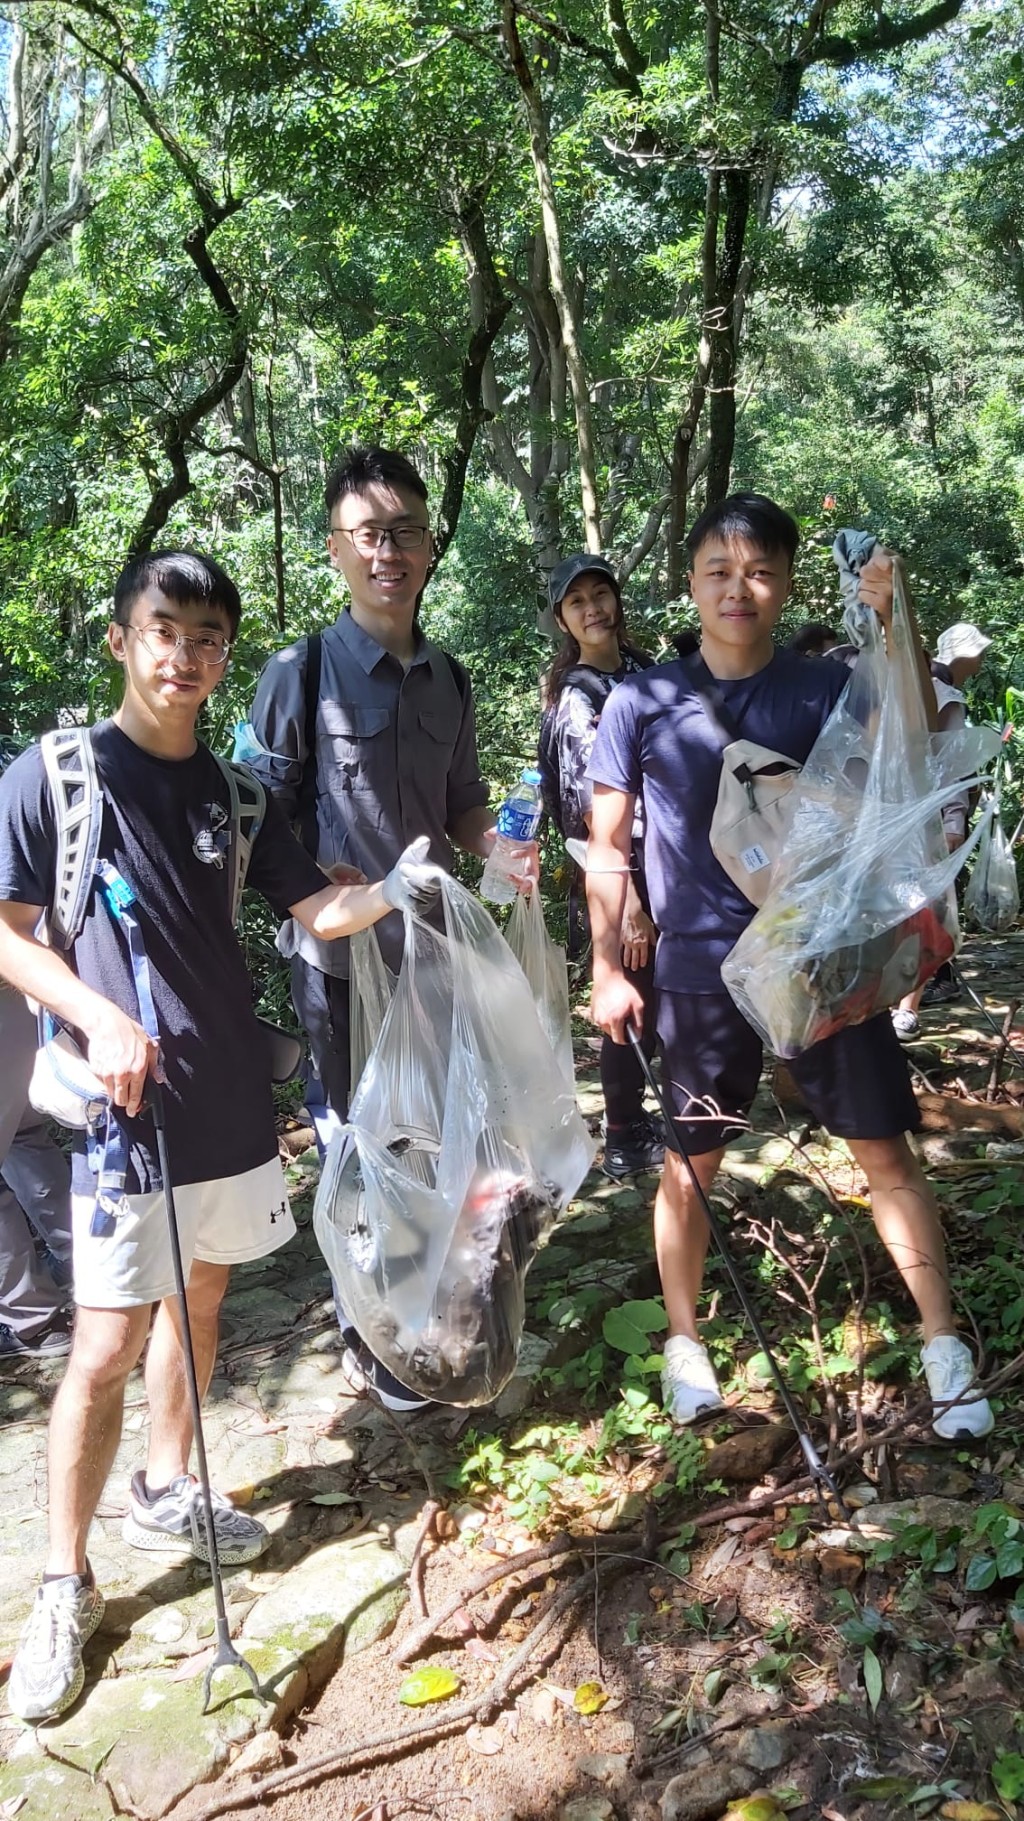 學會同時鼓勵會員身體力行，曾舉辦郊野公園清潔活動，組織會員及其親友一同上山清理垃圾，為保護環境出一分力。